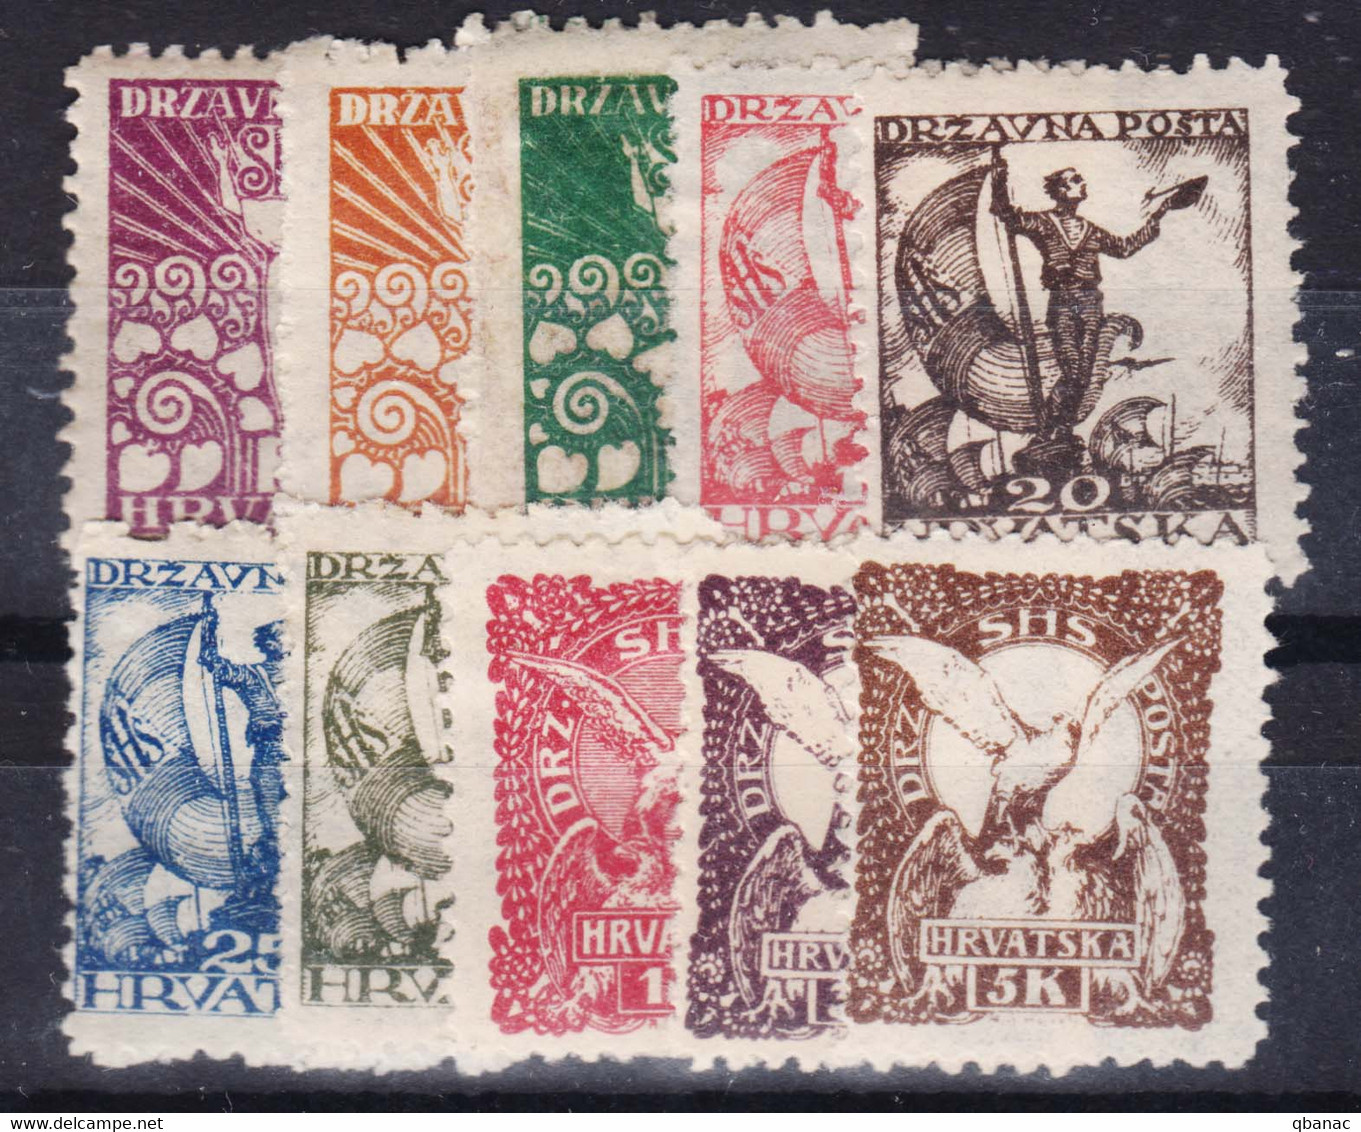 Yugoslavia, Kingdom SHS, Sailors Issue For Croatia 1919 Mi#88-97 Mint Hinged - Unused Stamps